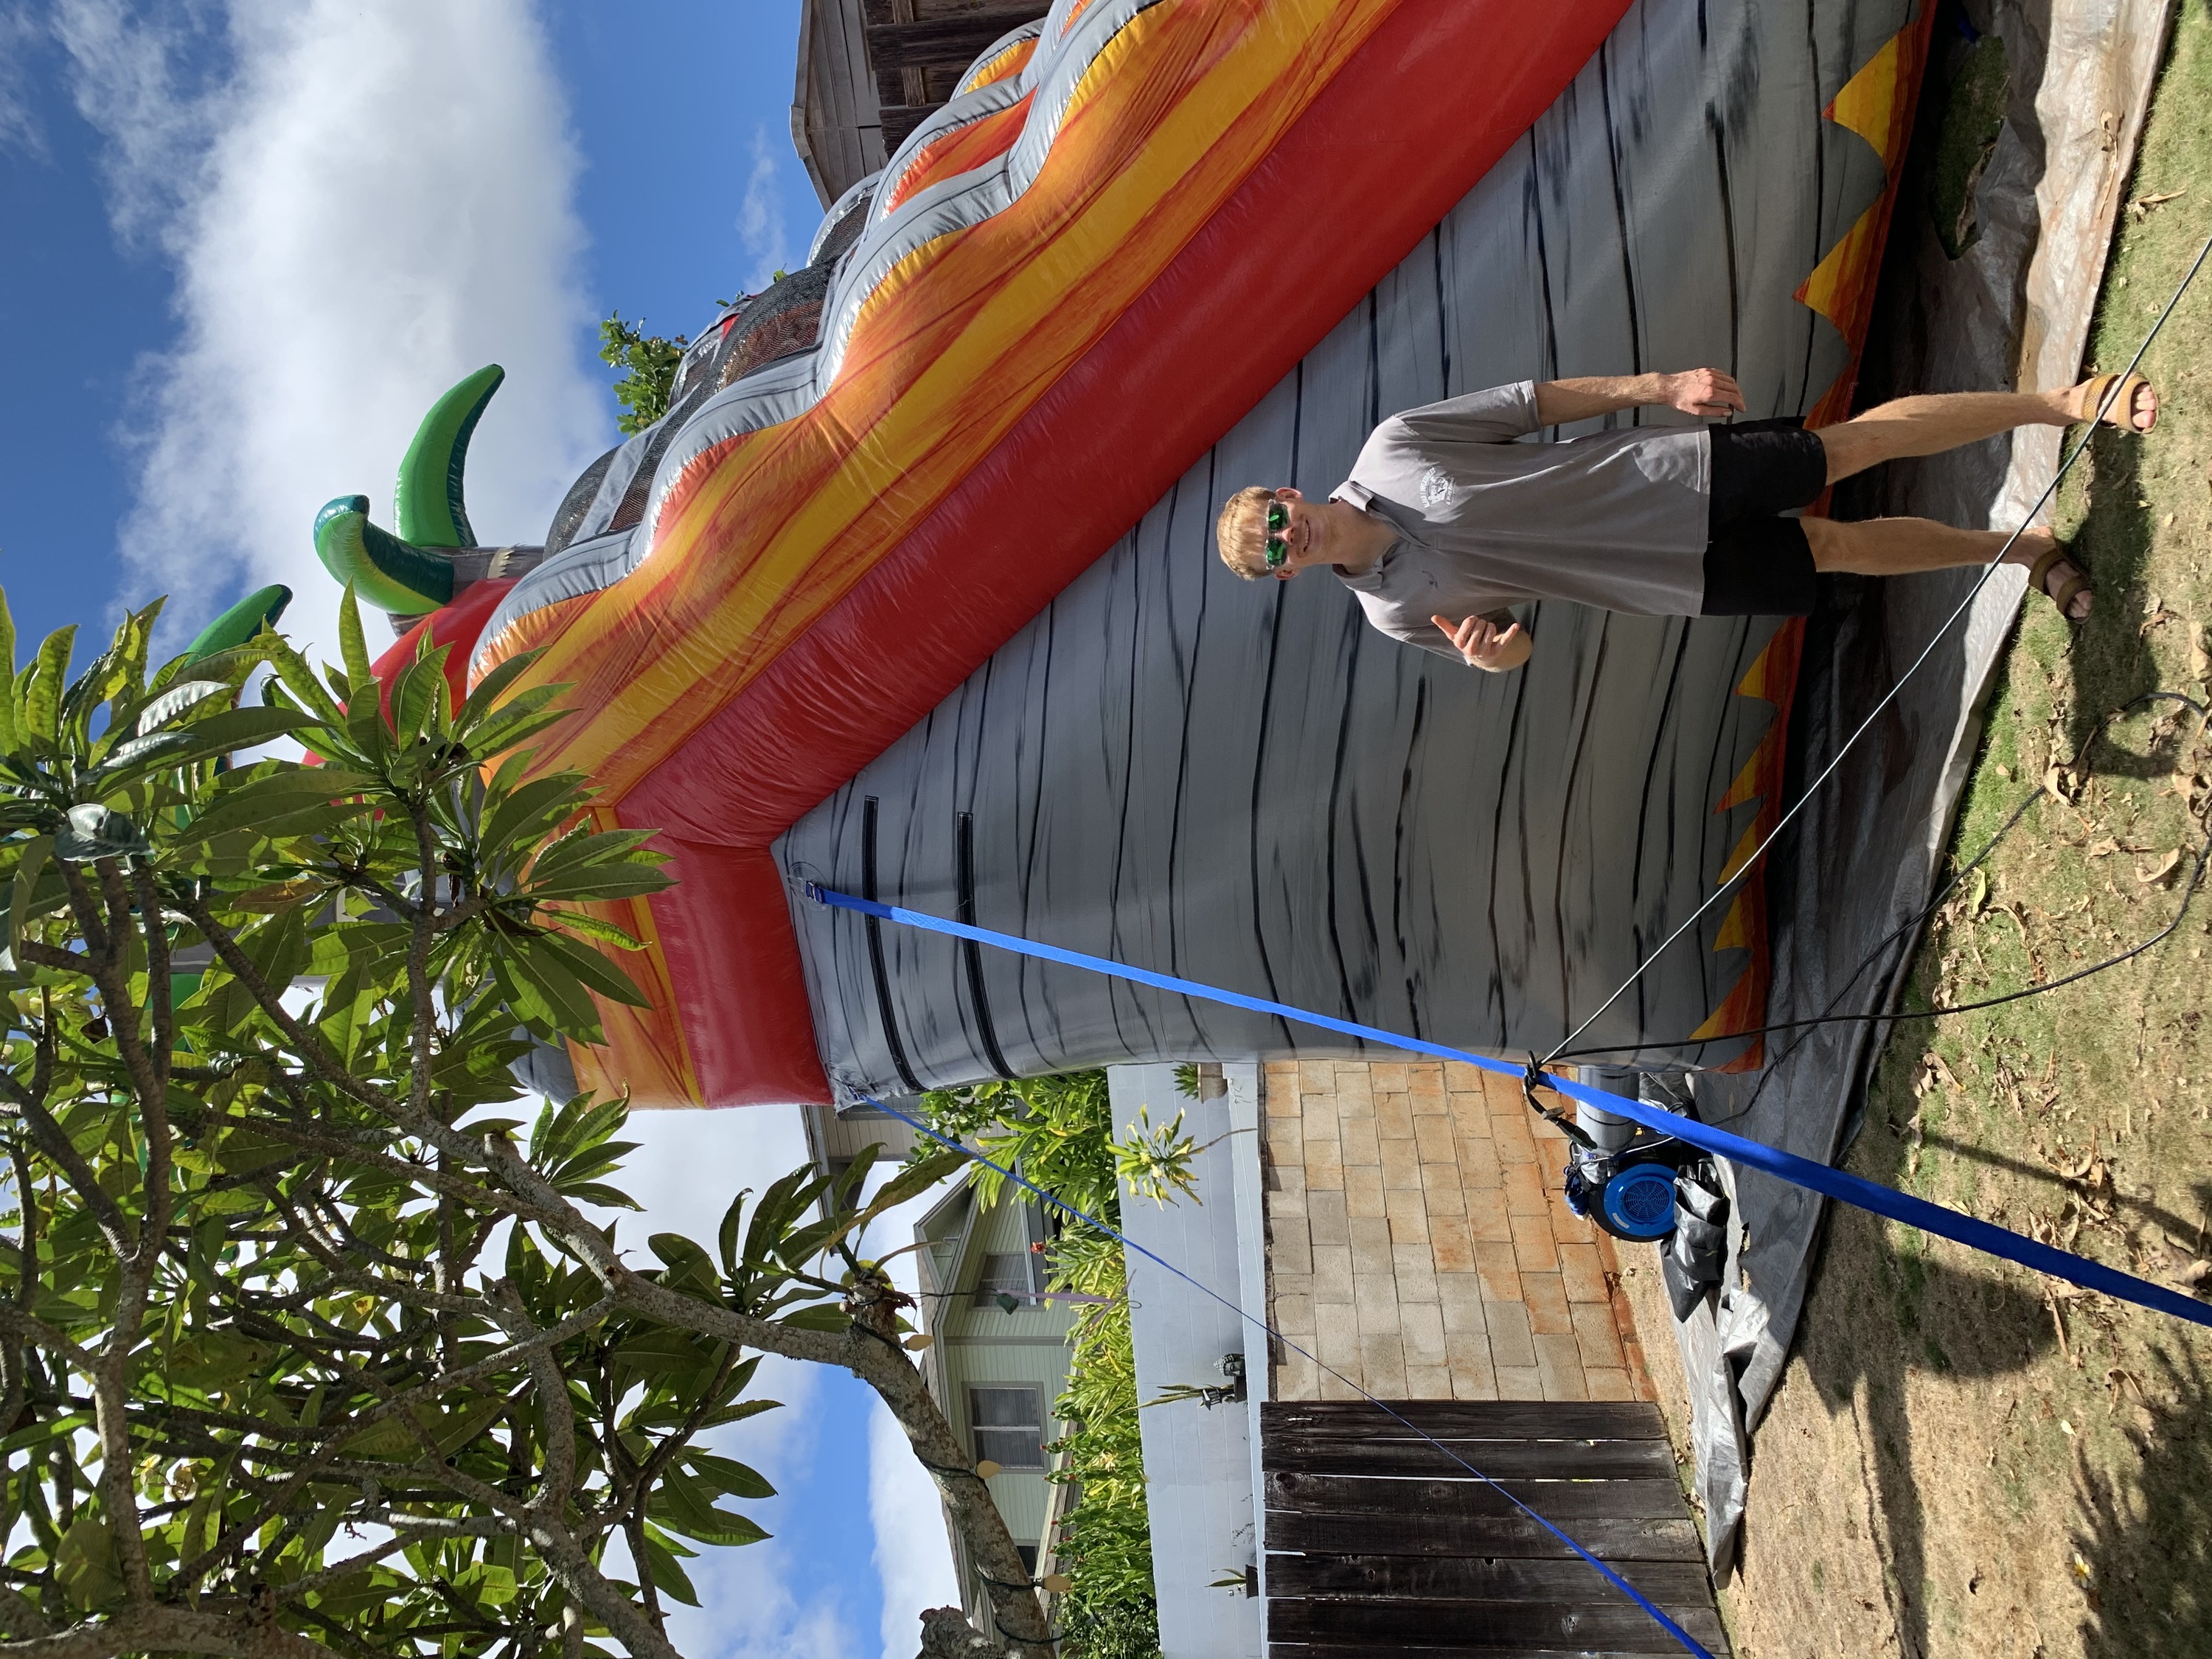 water slide rentals in Waipahu